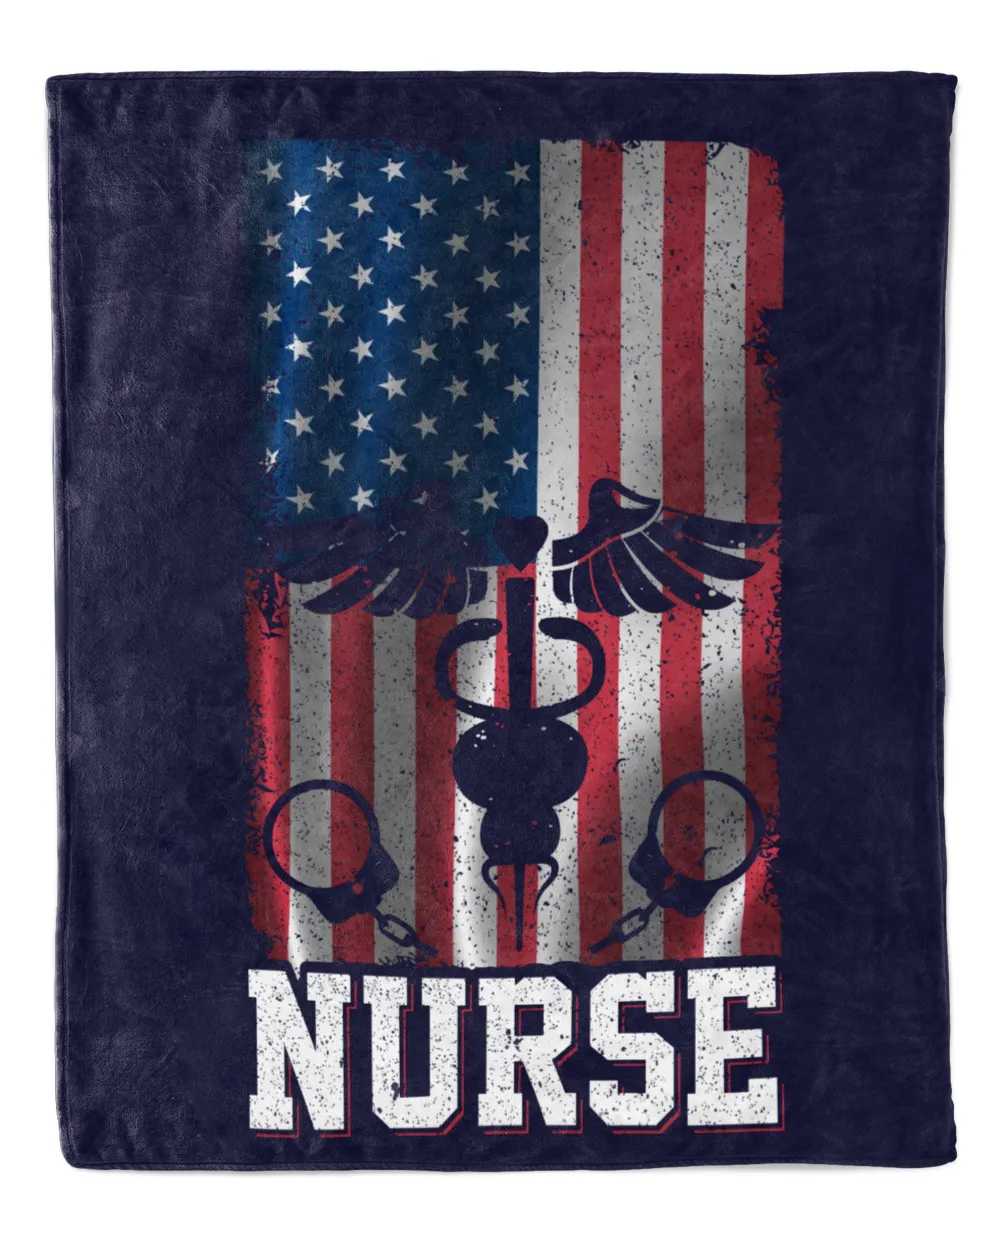 Nurses Equipment With Vintage US Flag